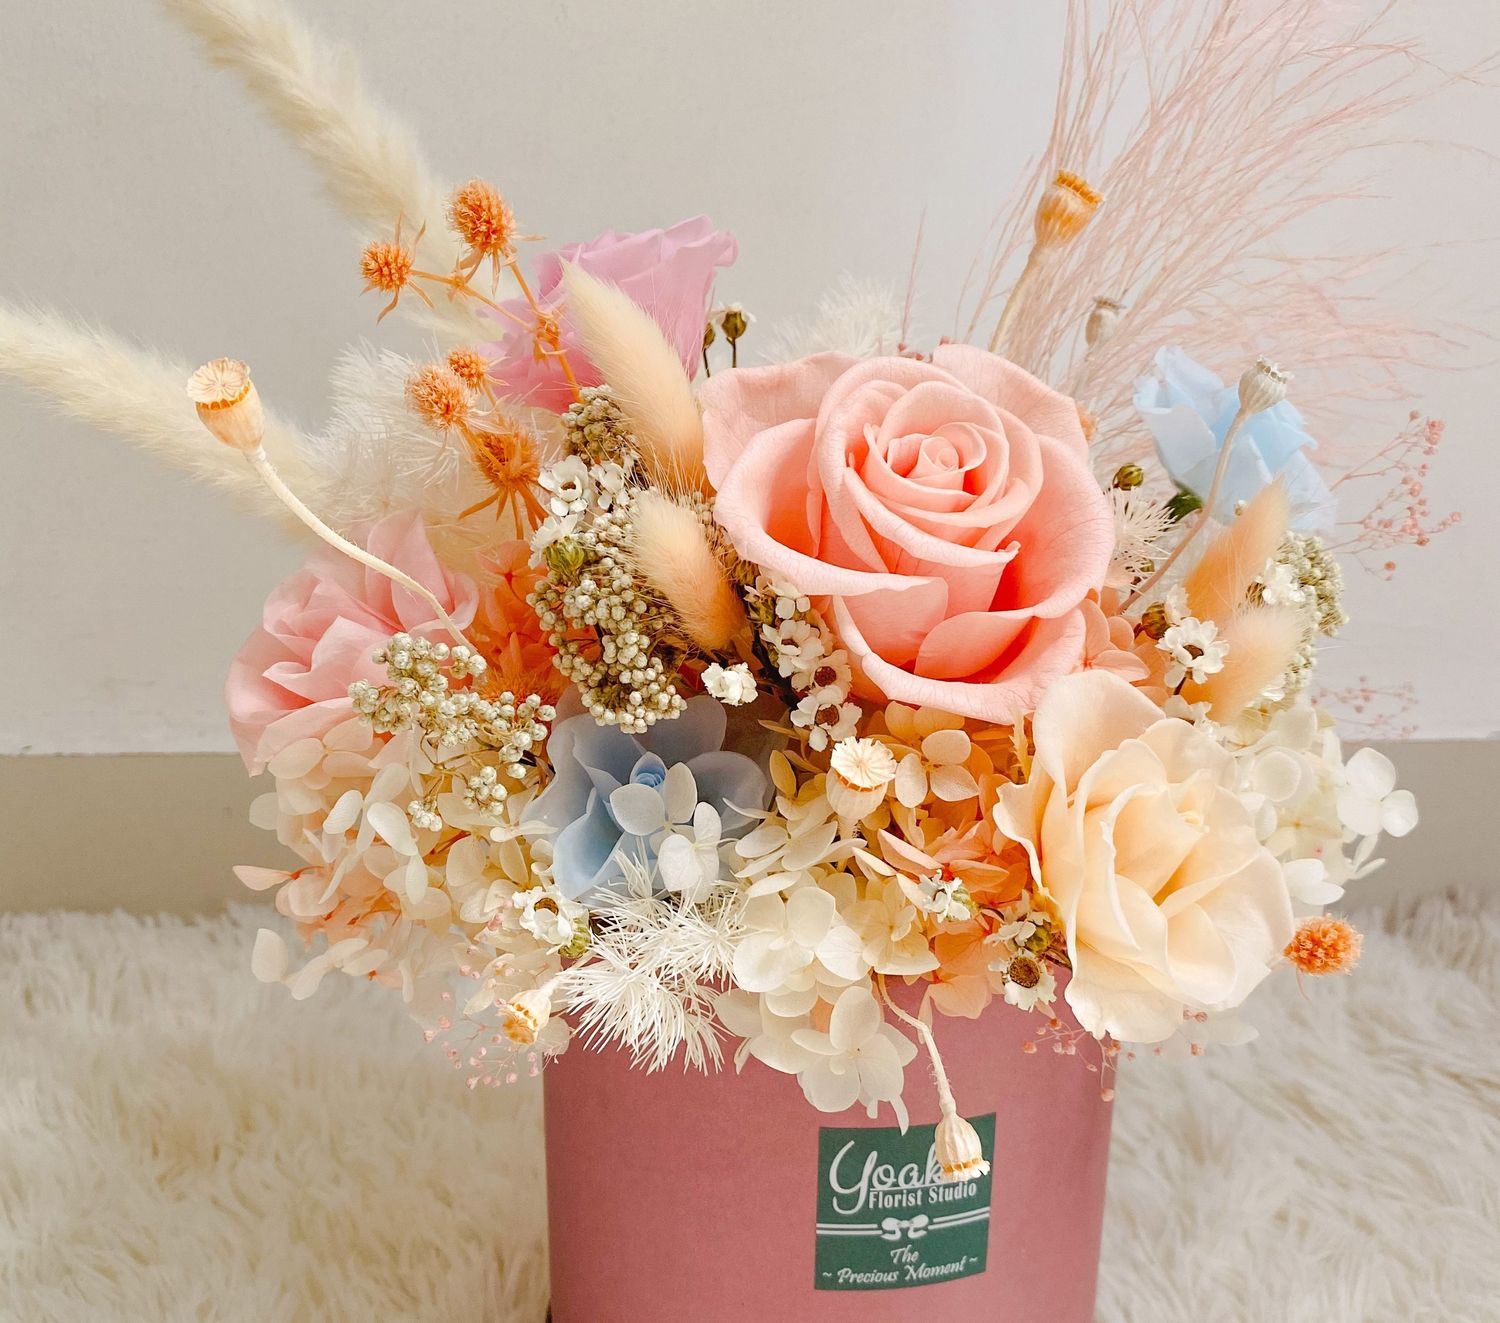 Yoake Florist | Best Online Florist in KL | Same Day Delivery | Premium Floral Arrangement | Preserve Flower Arragements